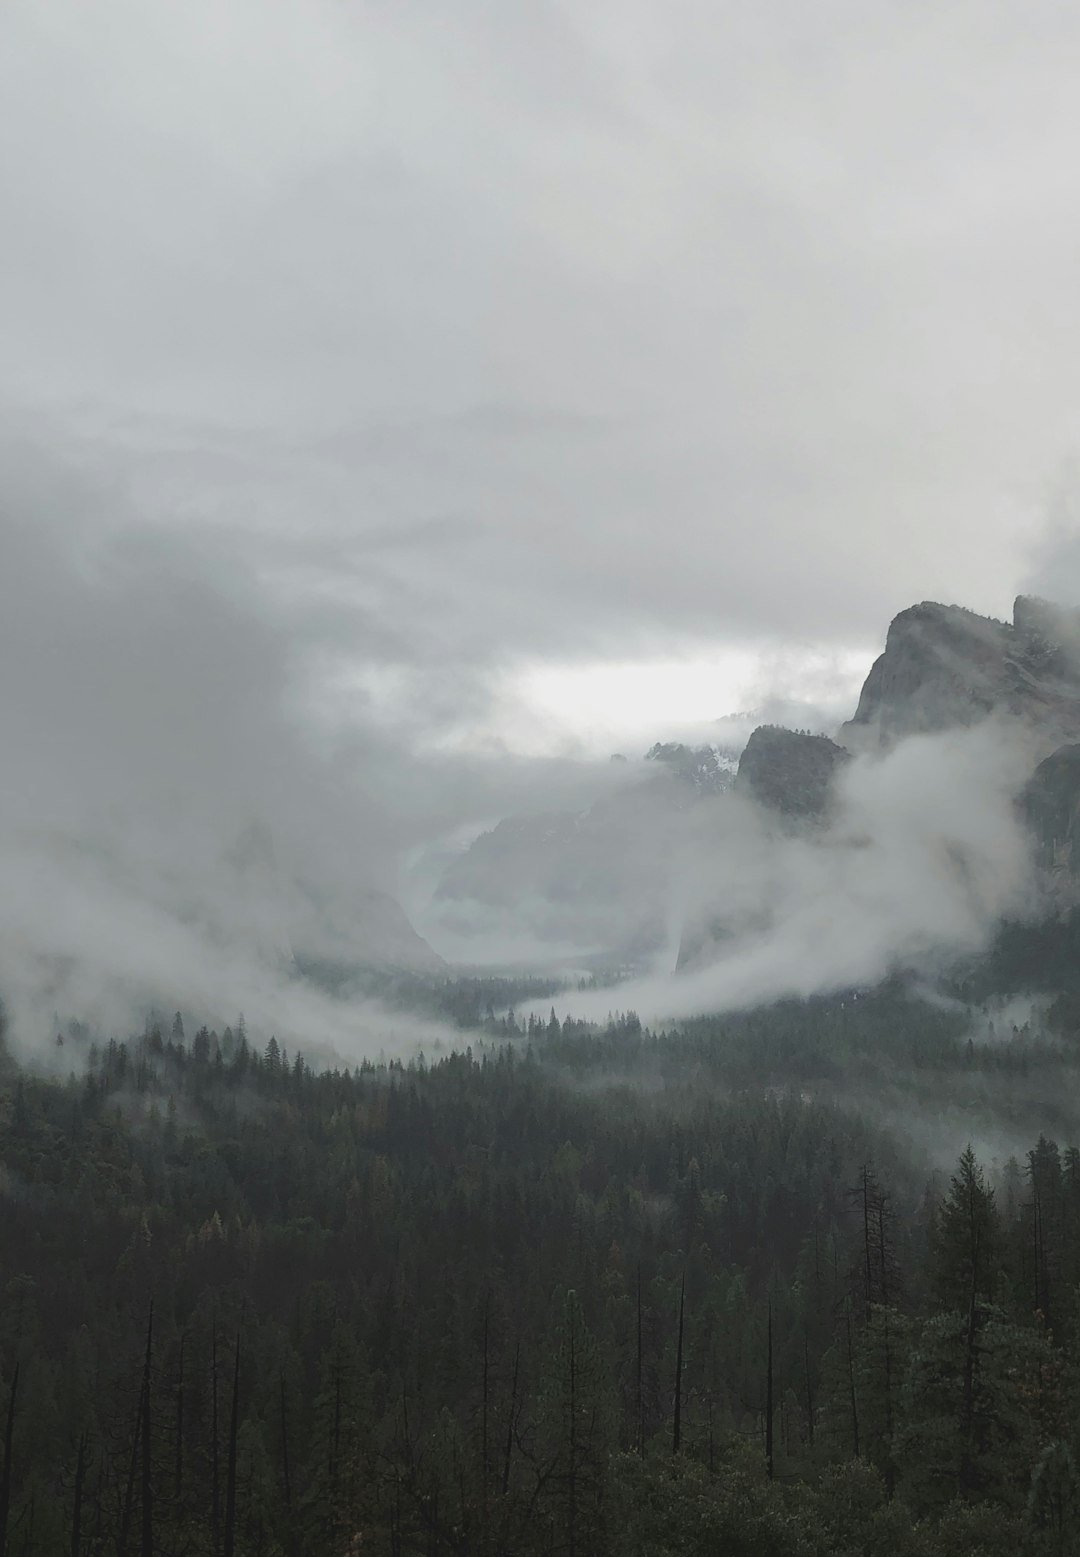 Highland photo spot Wawona Rd Yosemite Valley